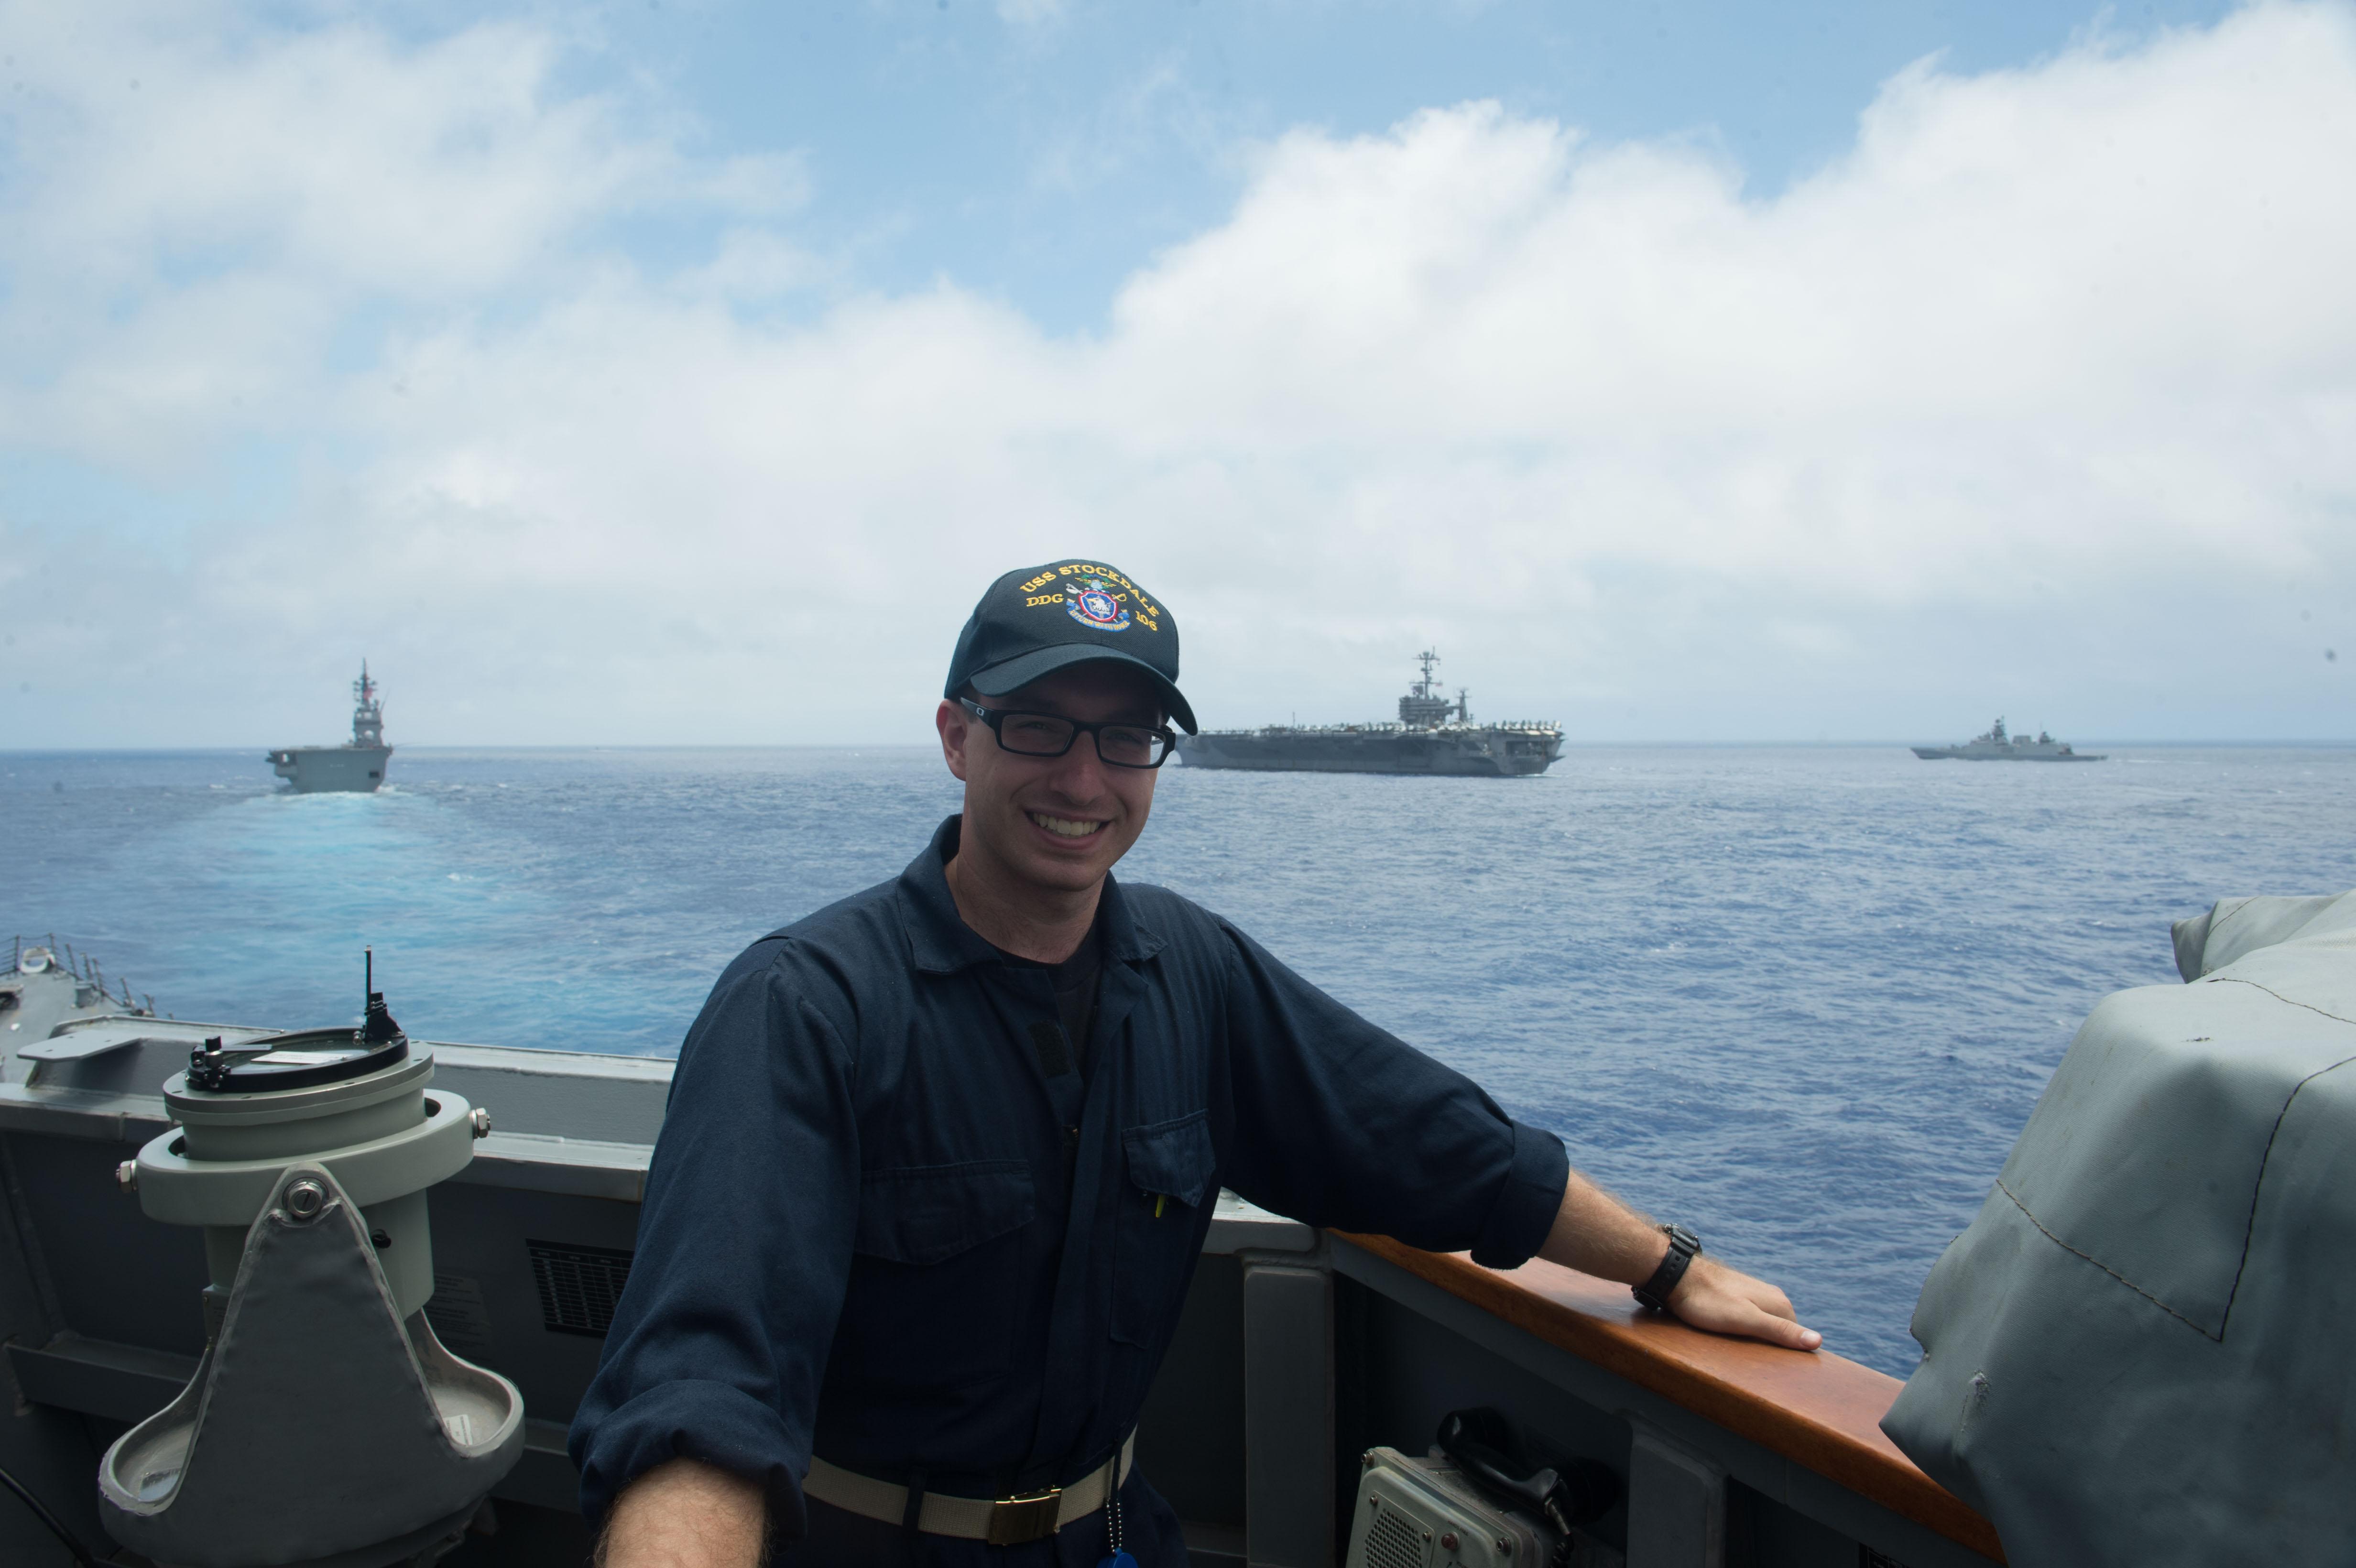 L’aspirant de marine Alek Robaczewski est debout à l’extérieur sur l’aileron de passerelle de l’USS Stockdale, avec trois navires dans la mer des Philippines à l’arrière-plan.